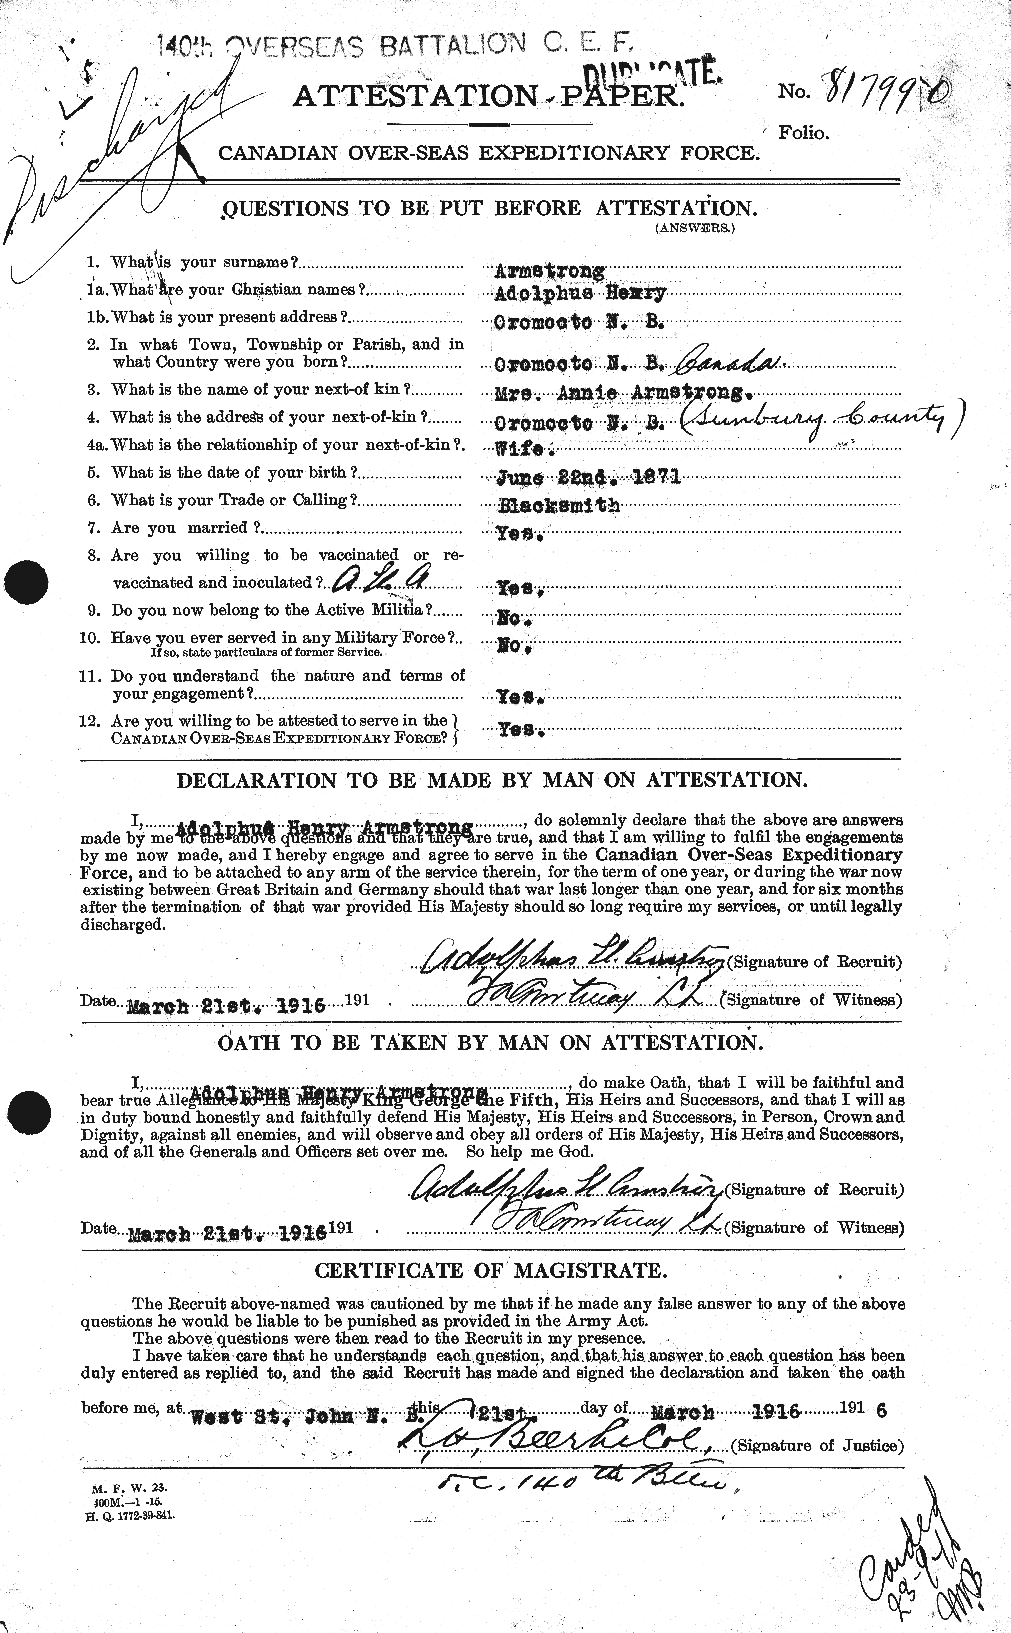 Dossiers du Personnel de la Première Guerre mondiale - CEC 214001a